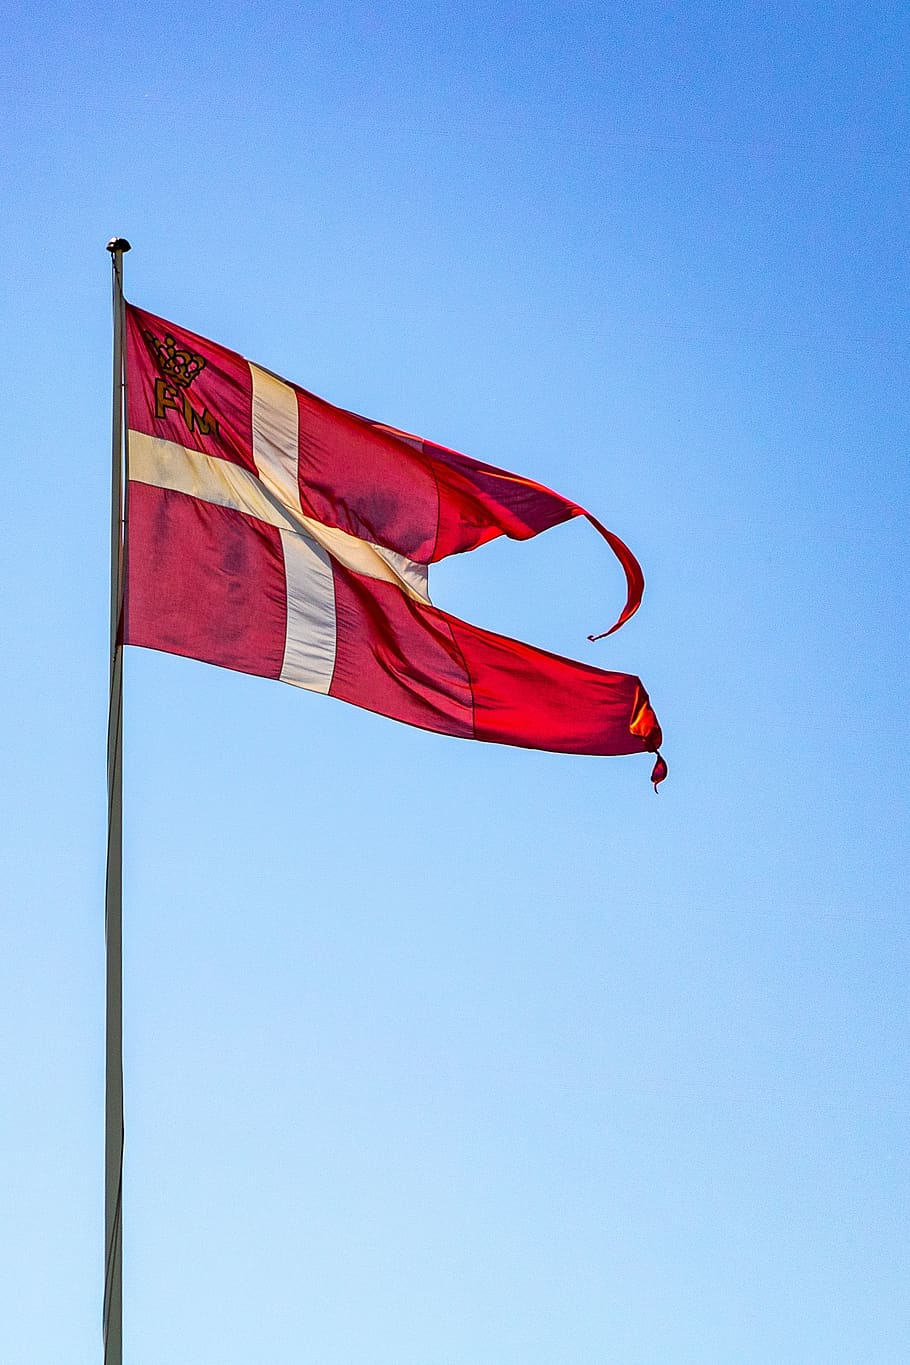 spiltflag, dannebrog, dinamarca, asta de bandera, rojo, blanco, bandera, cielo, bandera danesa, patriotismo